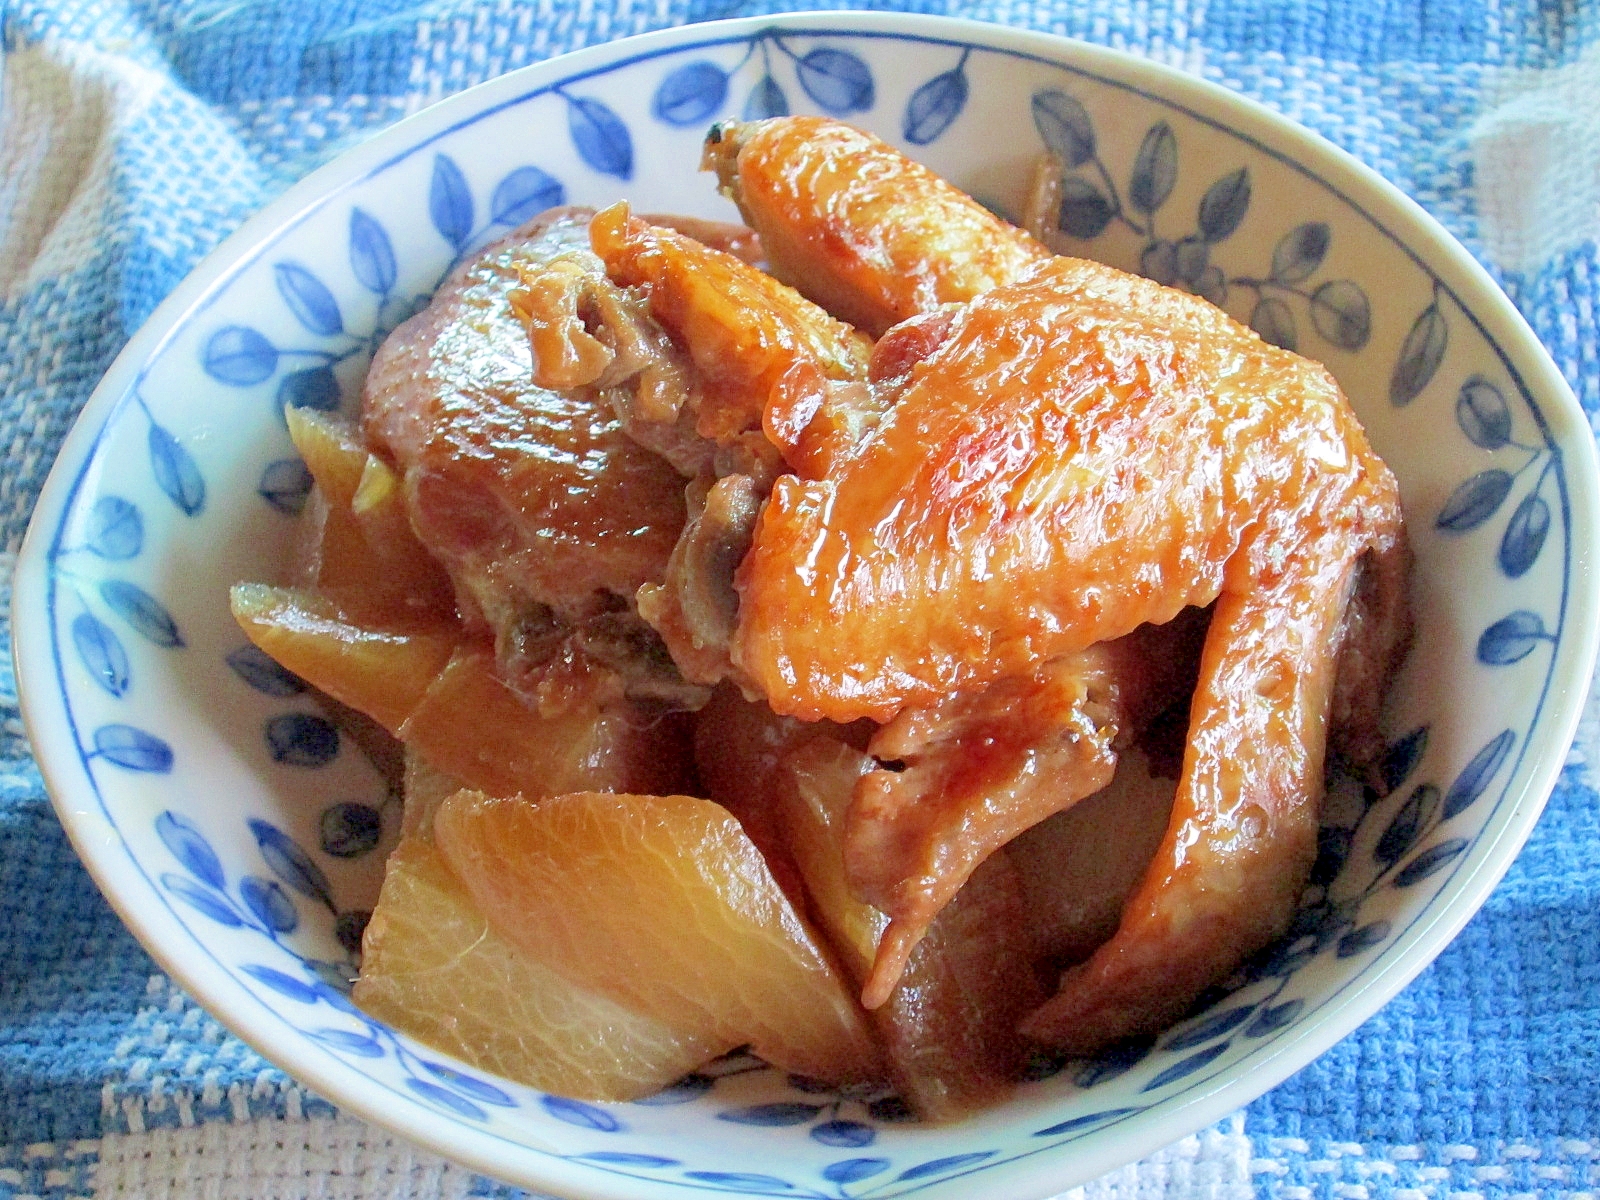 生姜風味の鶏手羽先と大根の煮物